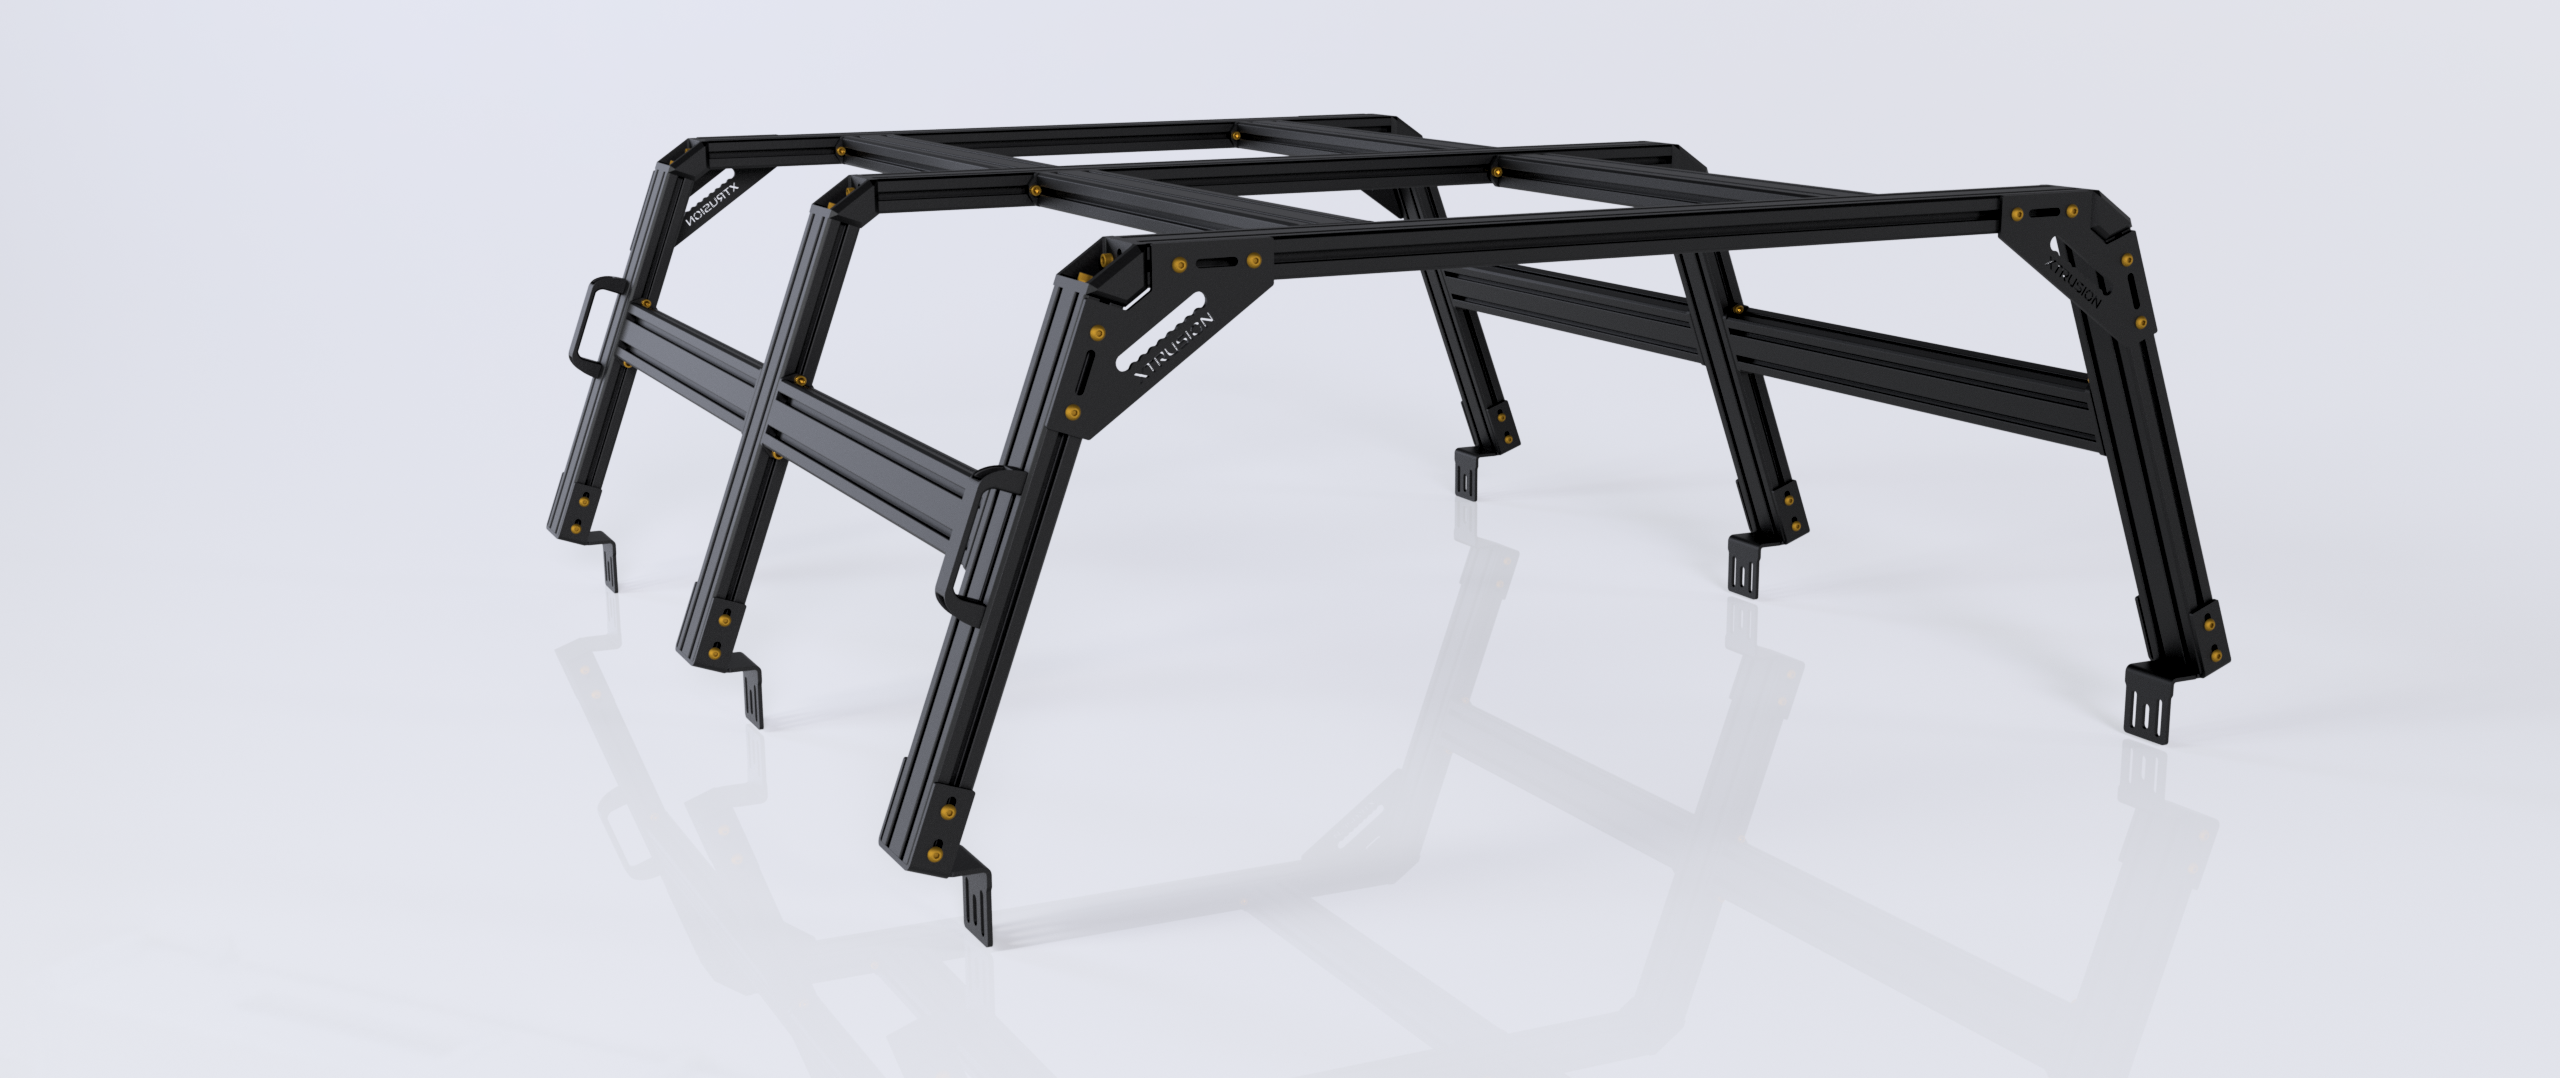 XTR3 Build-Your-Own Bed Rack - GM Silverado & Sierra 2500HD / 3500HD